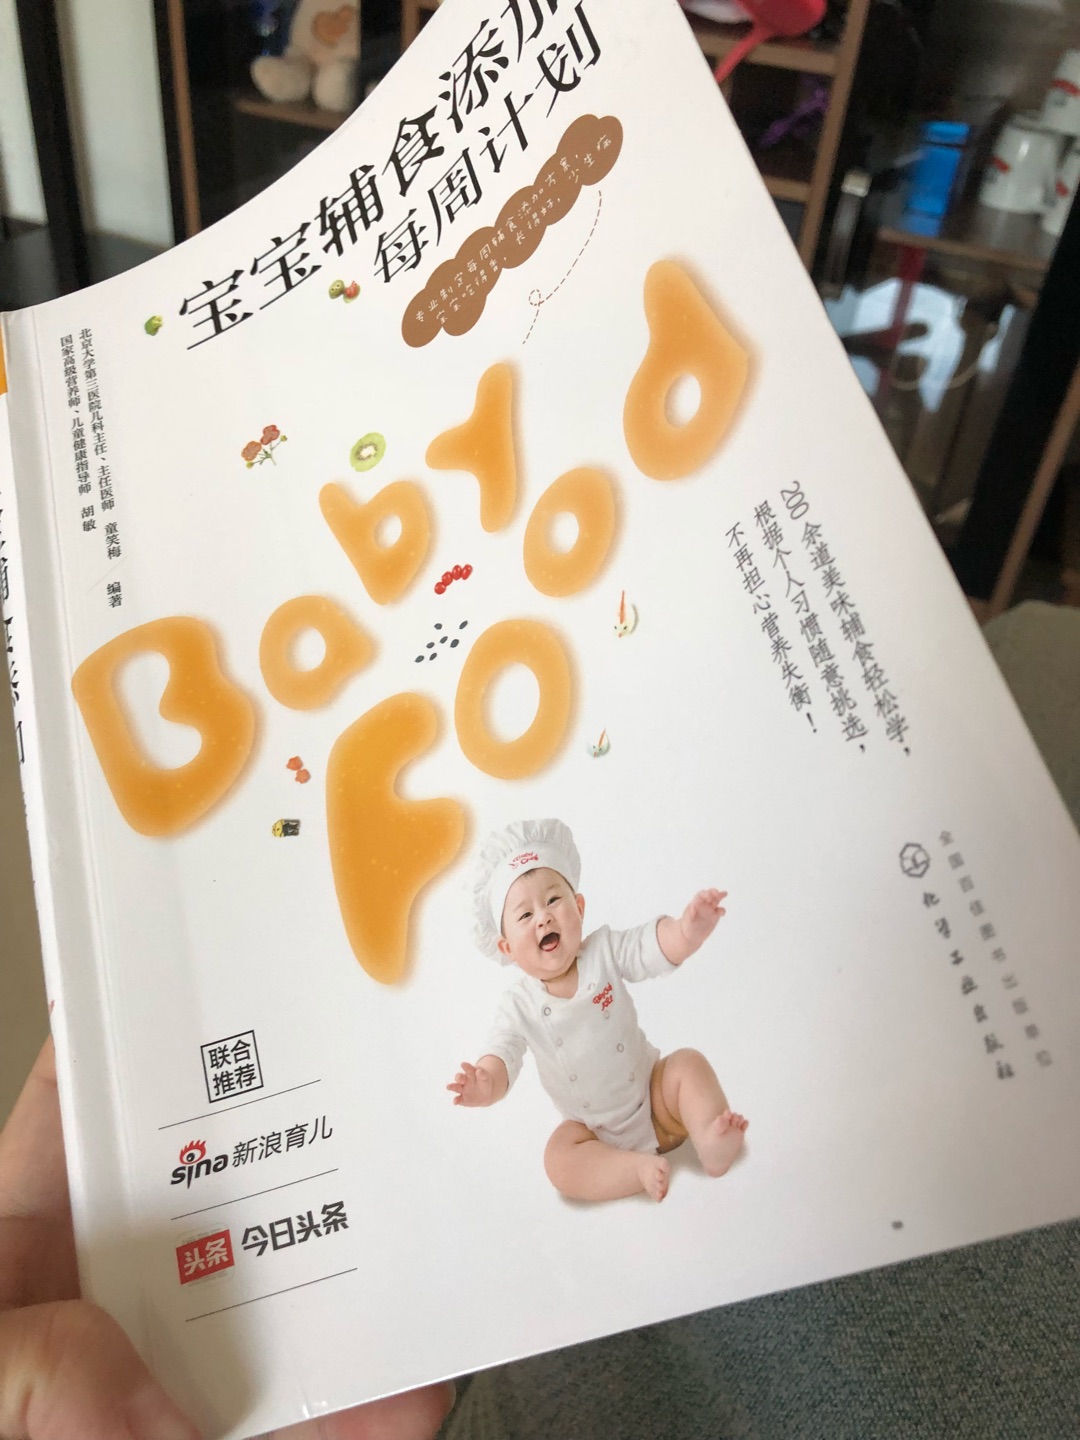 不错，收到书后大概翻看了一下，简单又营养的宝宝辅食计划很值得妈妈的购买哦。